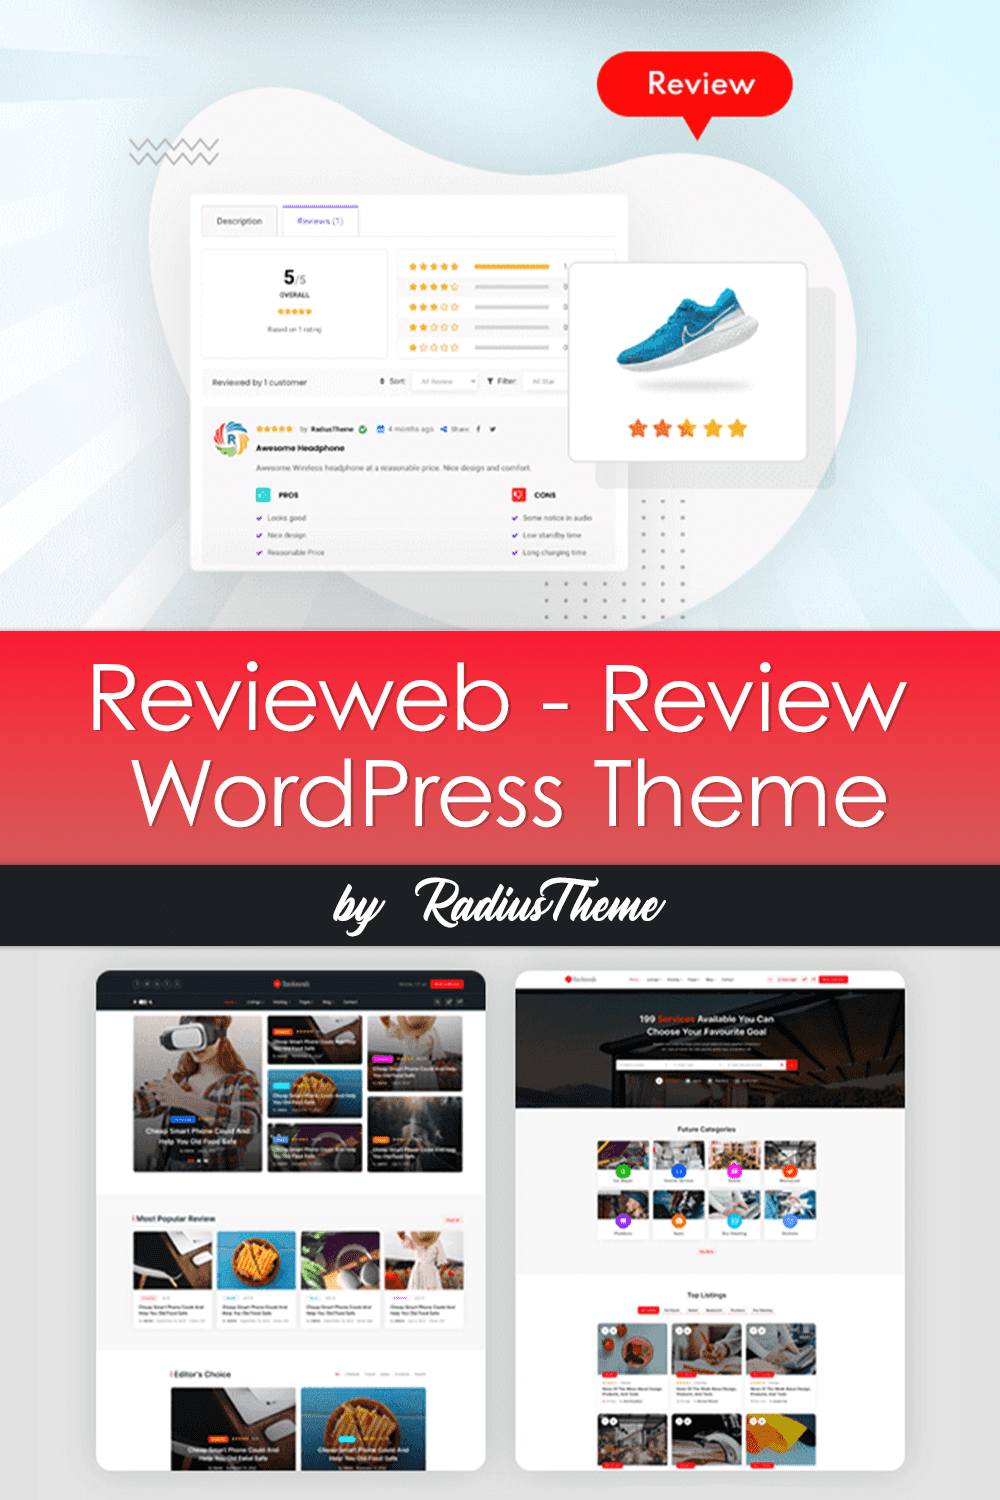 Description of Revieweb - Review WordPress Theme.